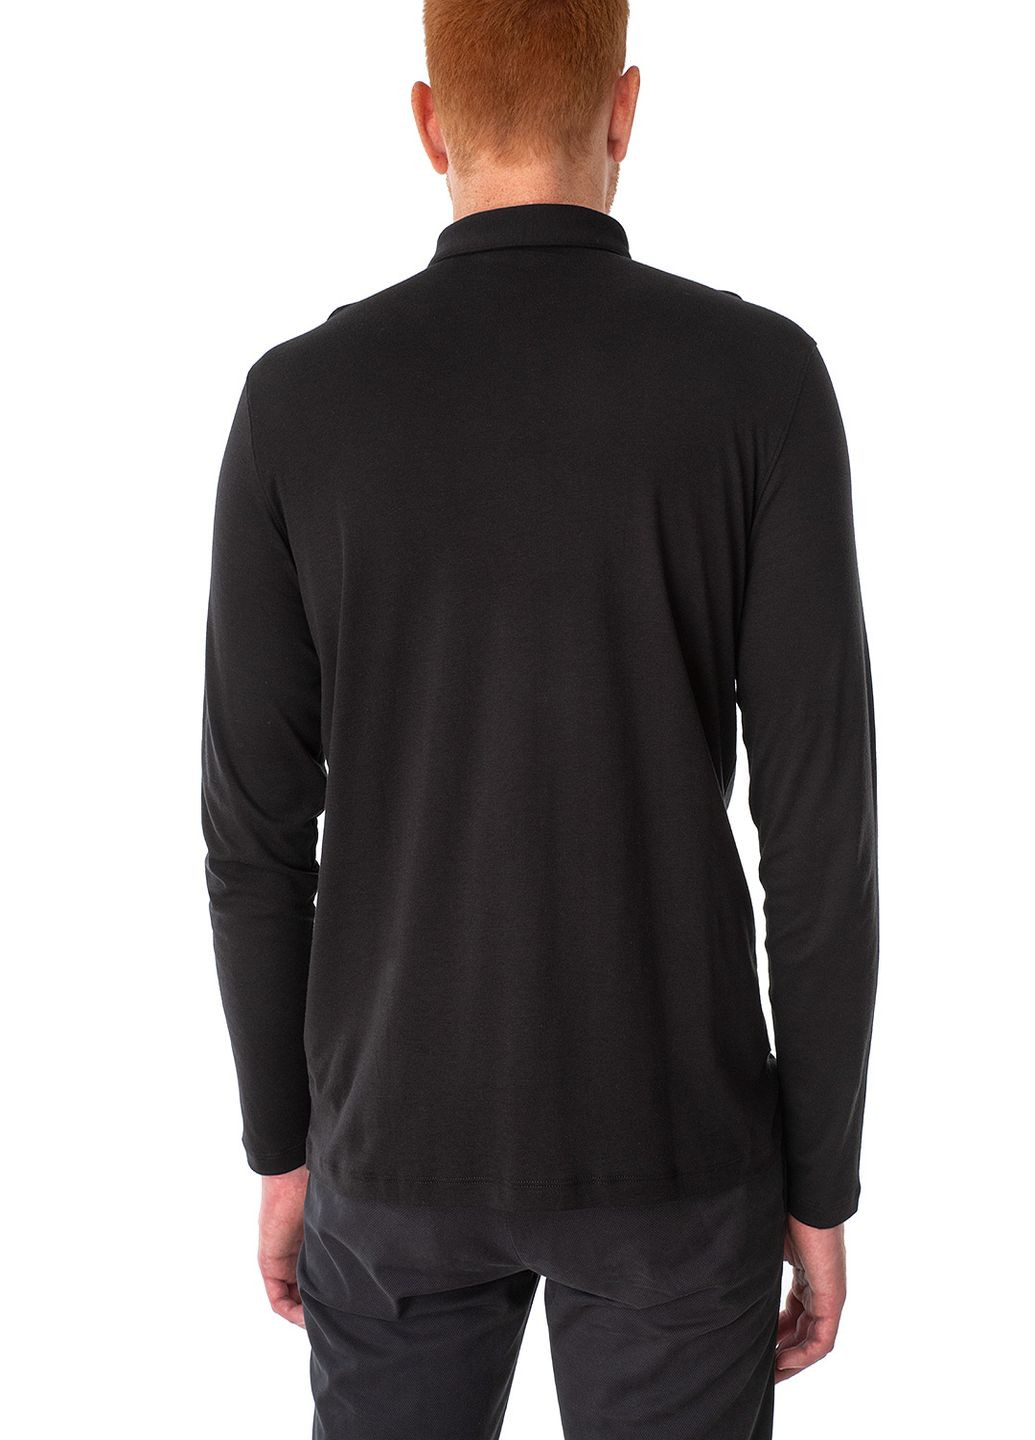 Черная футболка-поло для мужчин Ragman однотонная